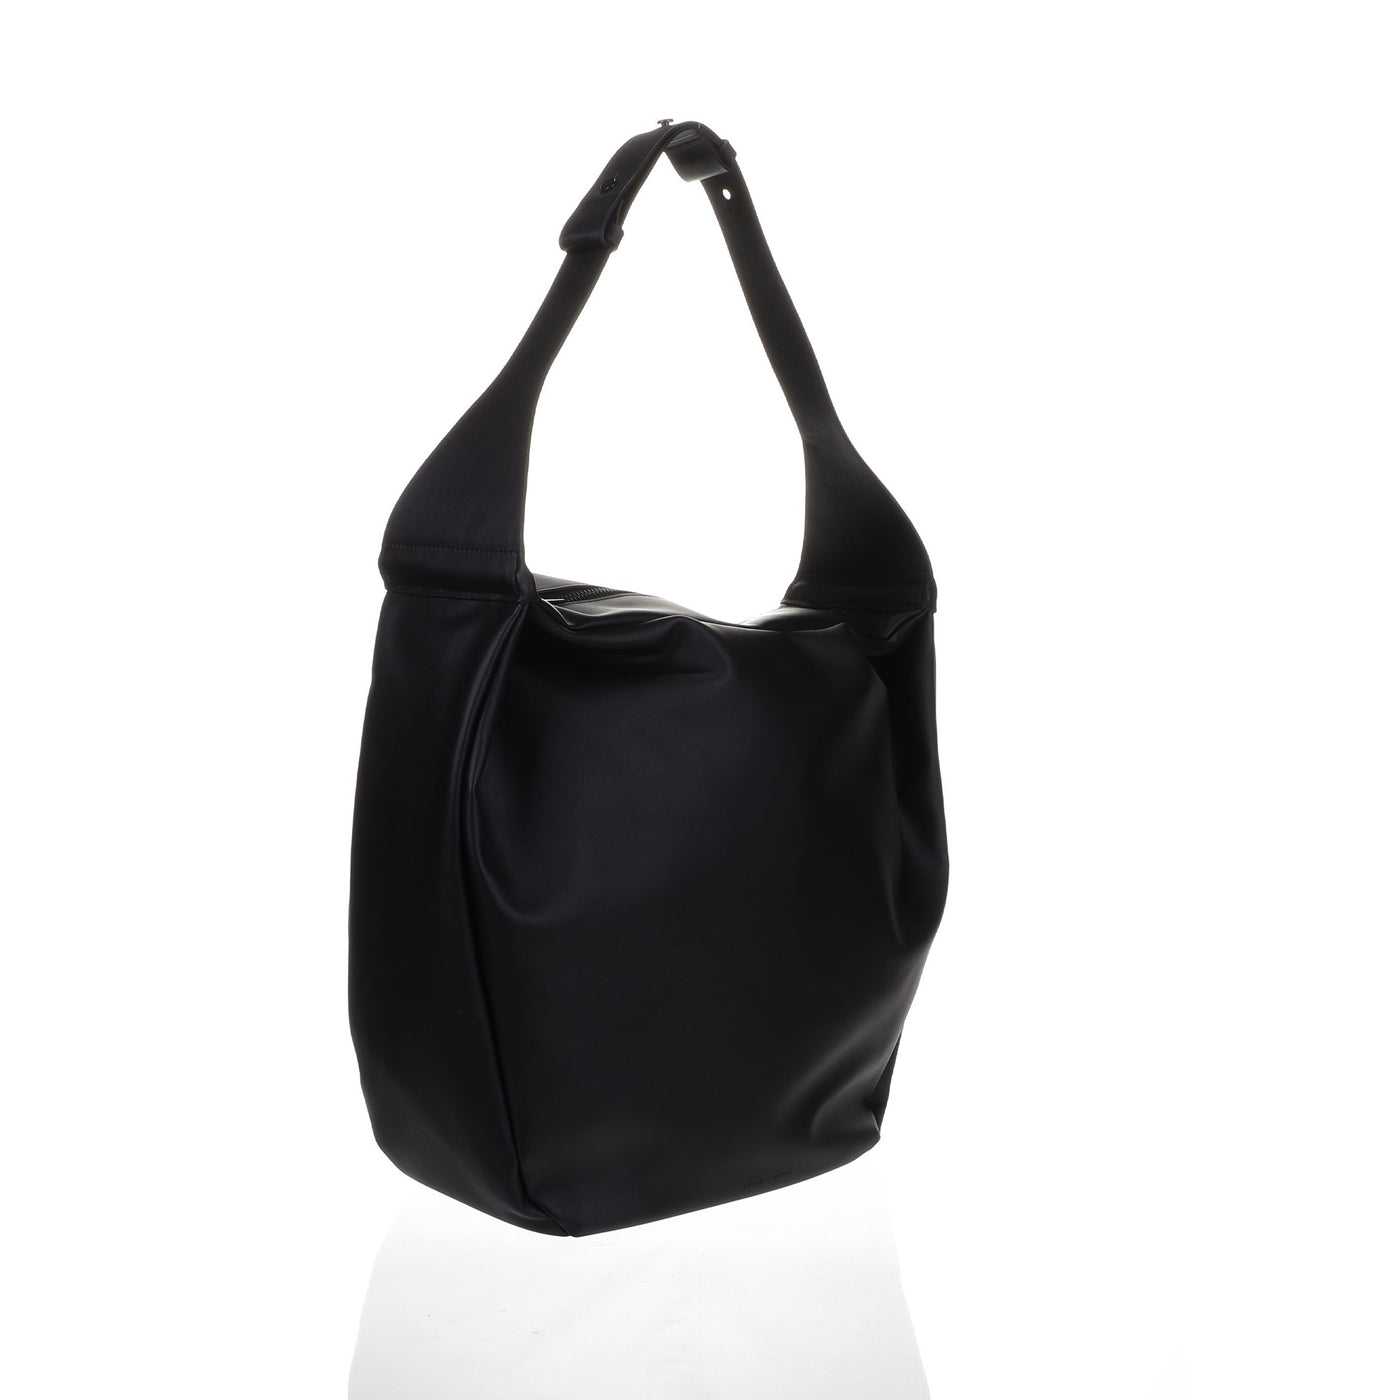 Narumi Hand bag in black